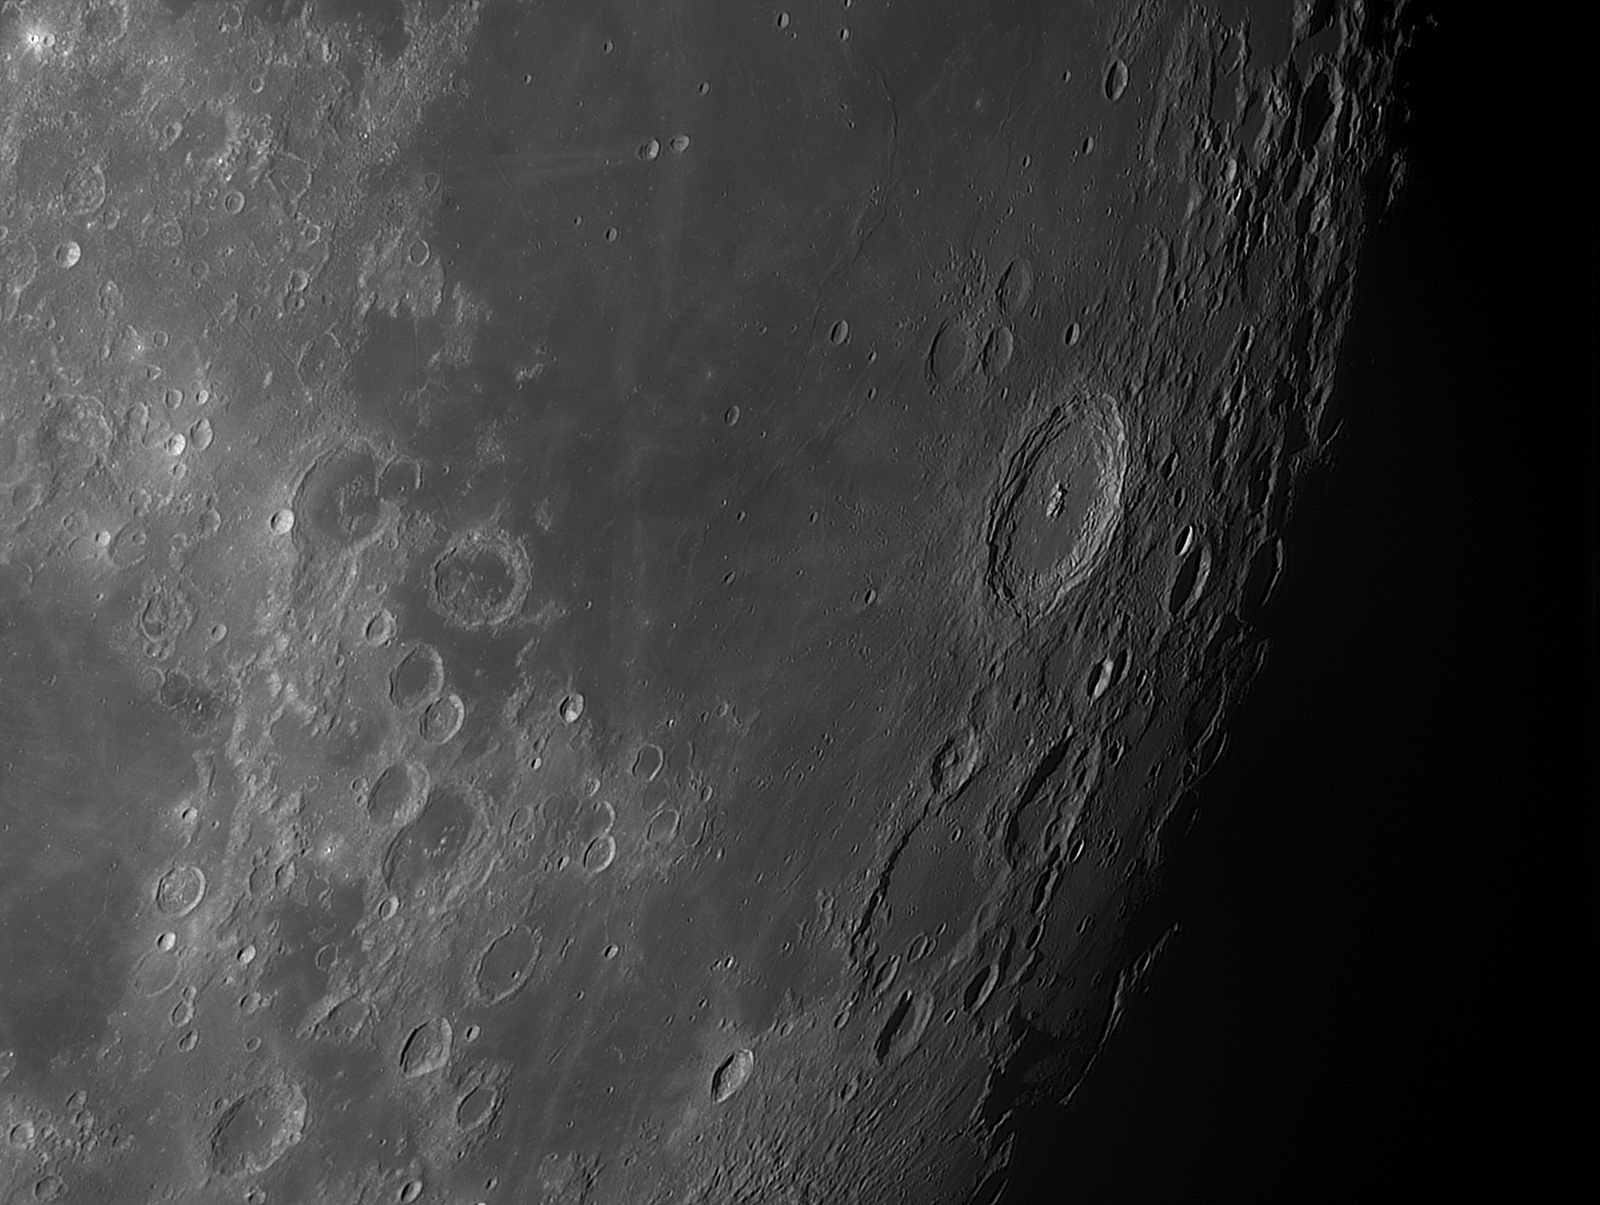 Lune-20200904_Langrenus-baAS.jpg.7427045bf5fd77e01b6089499d2f2bca.jpg